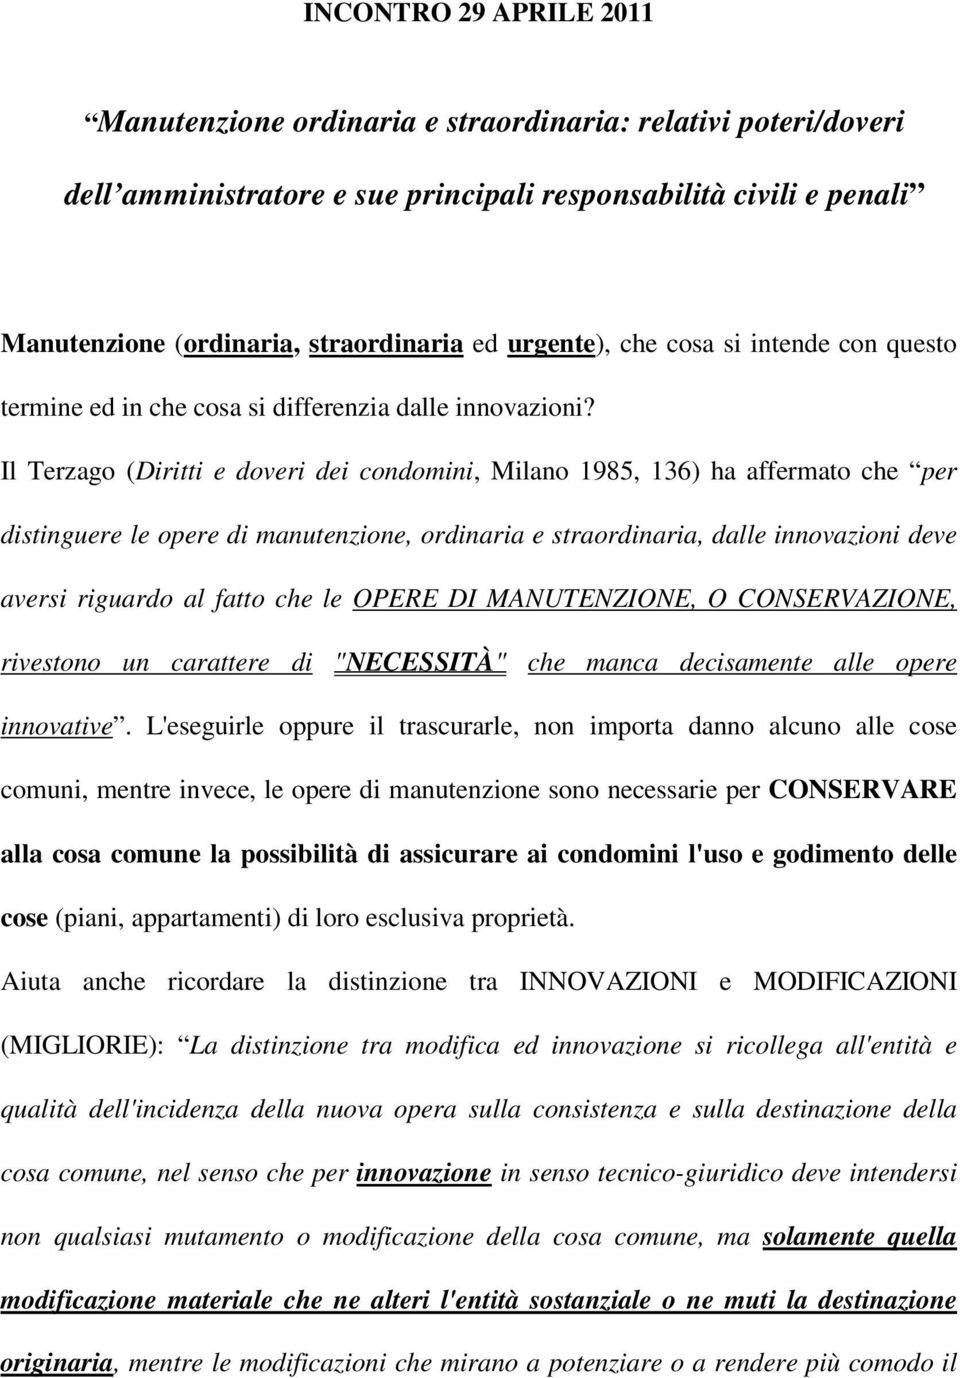 Il Terzago (Diritti e doveri dei condomini, Milano 1985, 136) ha affermato che per distinguere le opere di manutenzione, ordinaria e straordinaria, dalle innovazioni deve aversi riguardo al fatto che